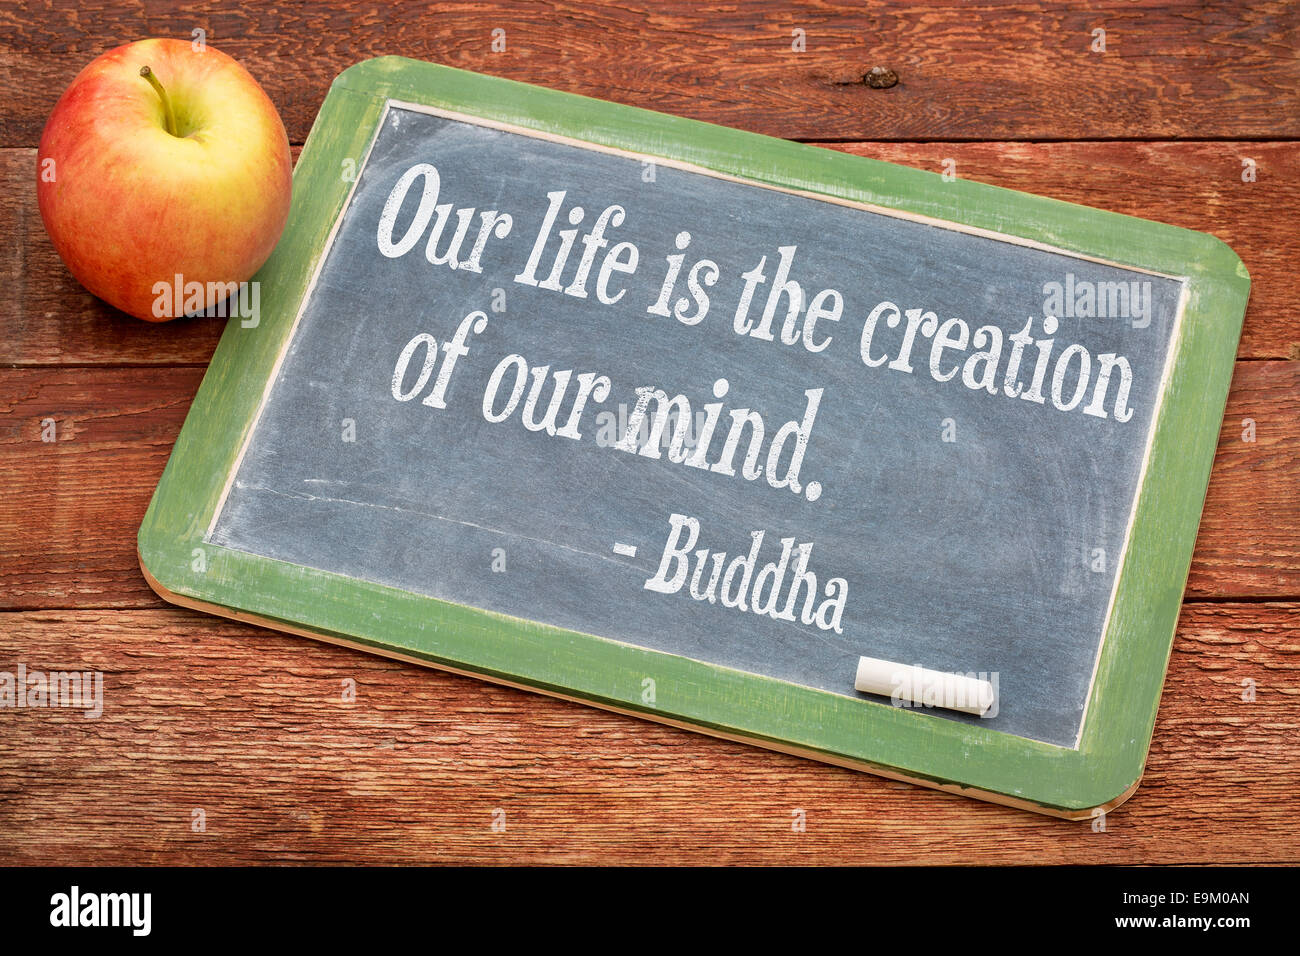 Unser Leben ist Schöpfung unseres Geistes - Buddha-Zitat auf einer Schiefertafel Tafel gegen rote Scheune Holz Stockfoto